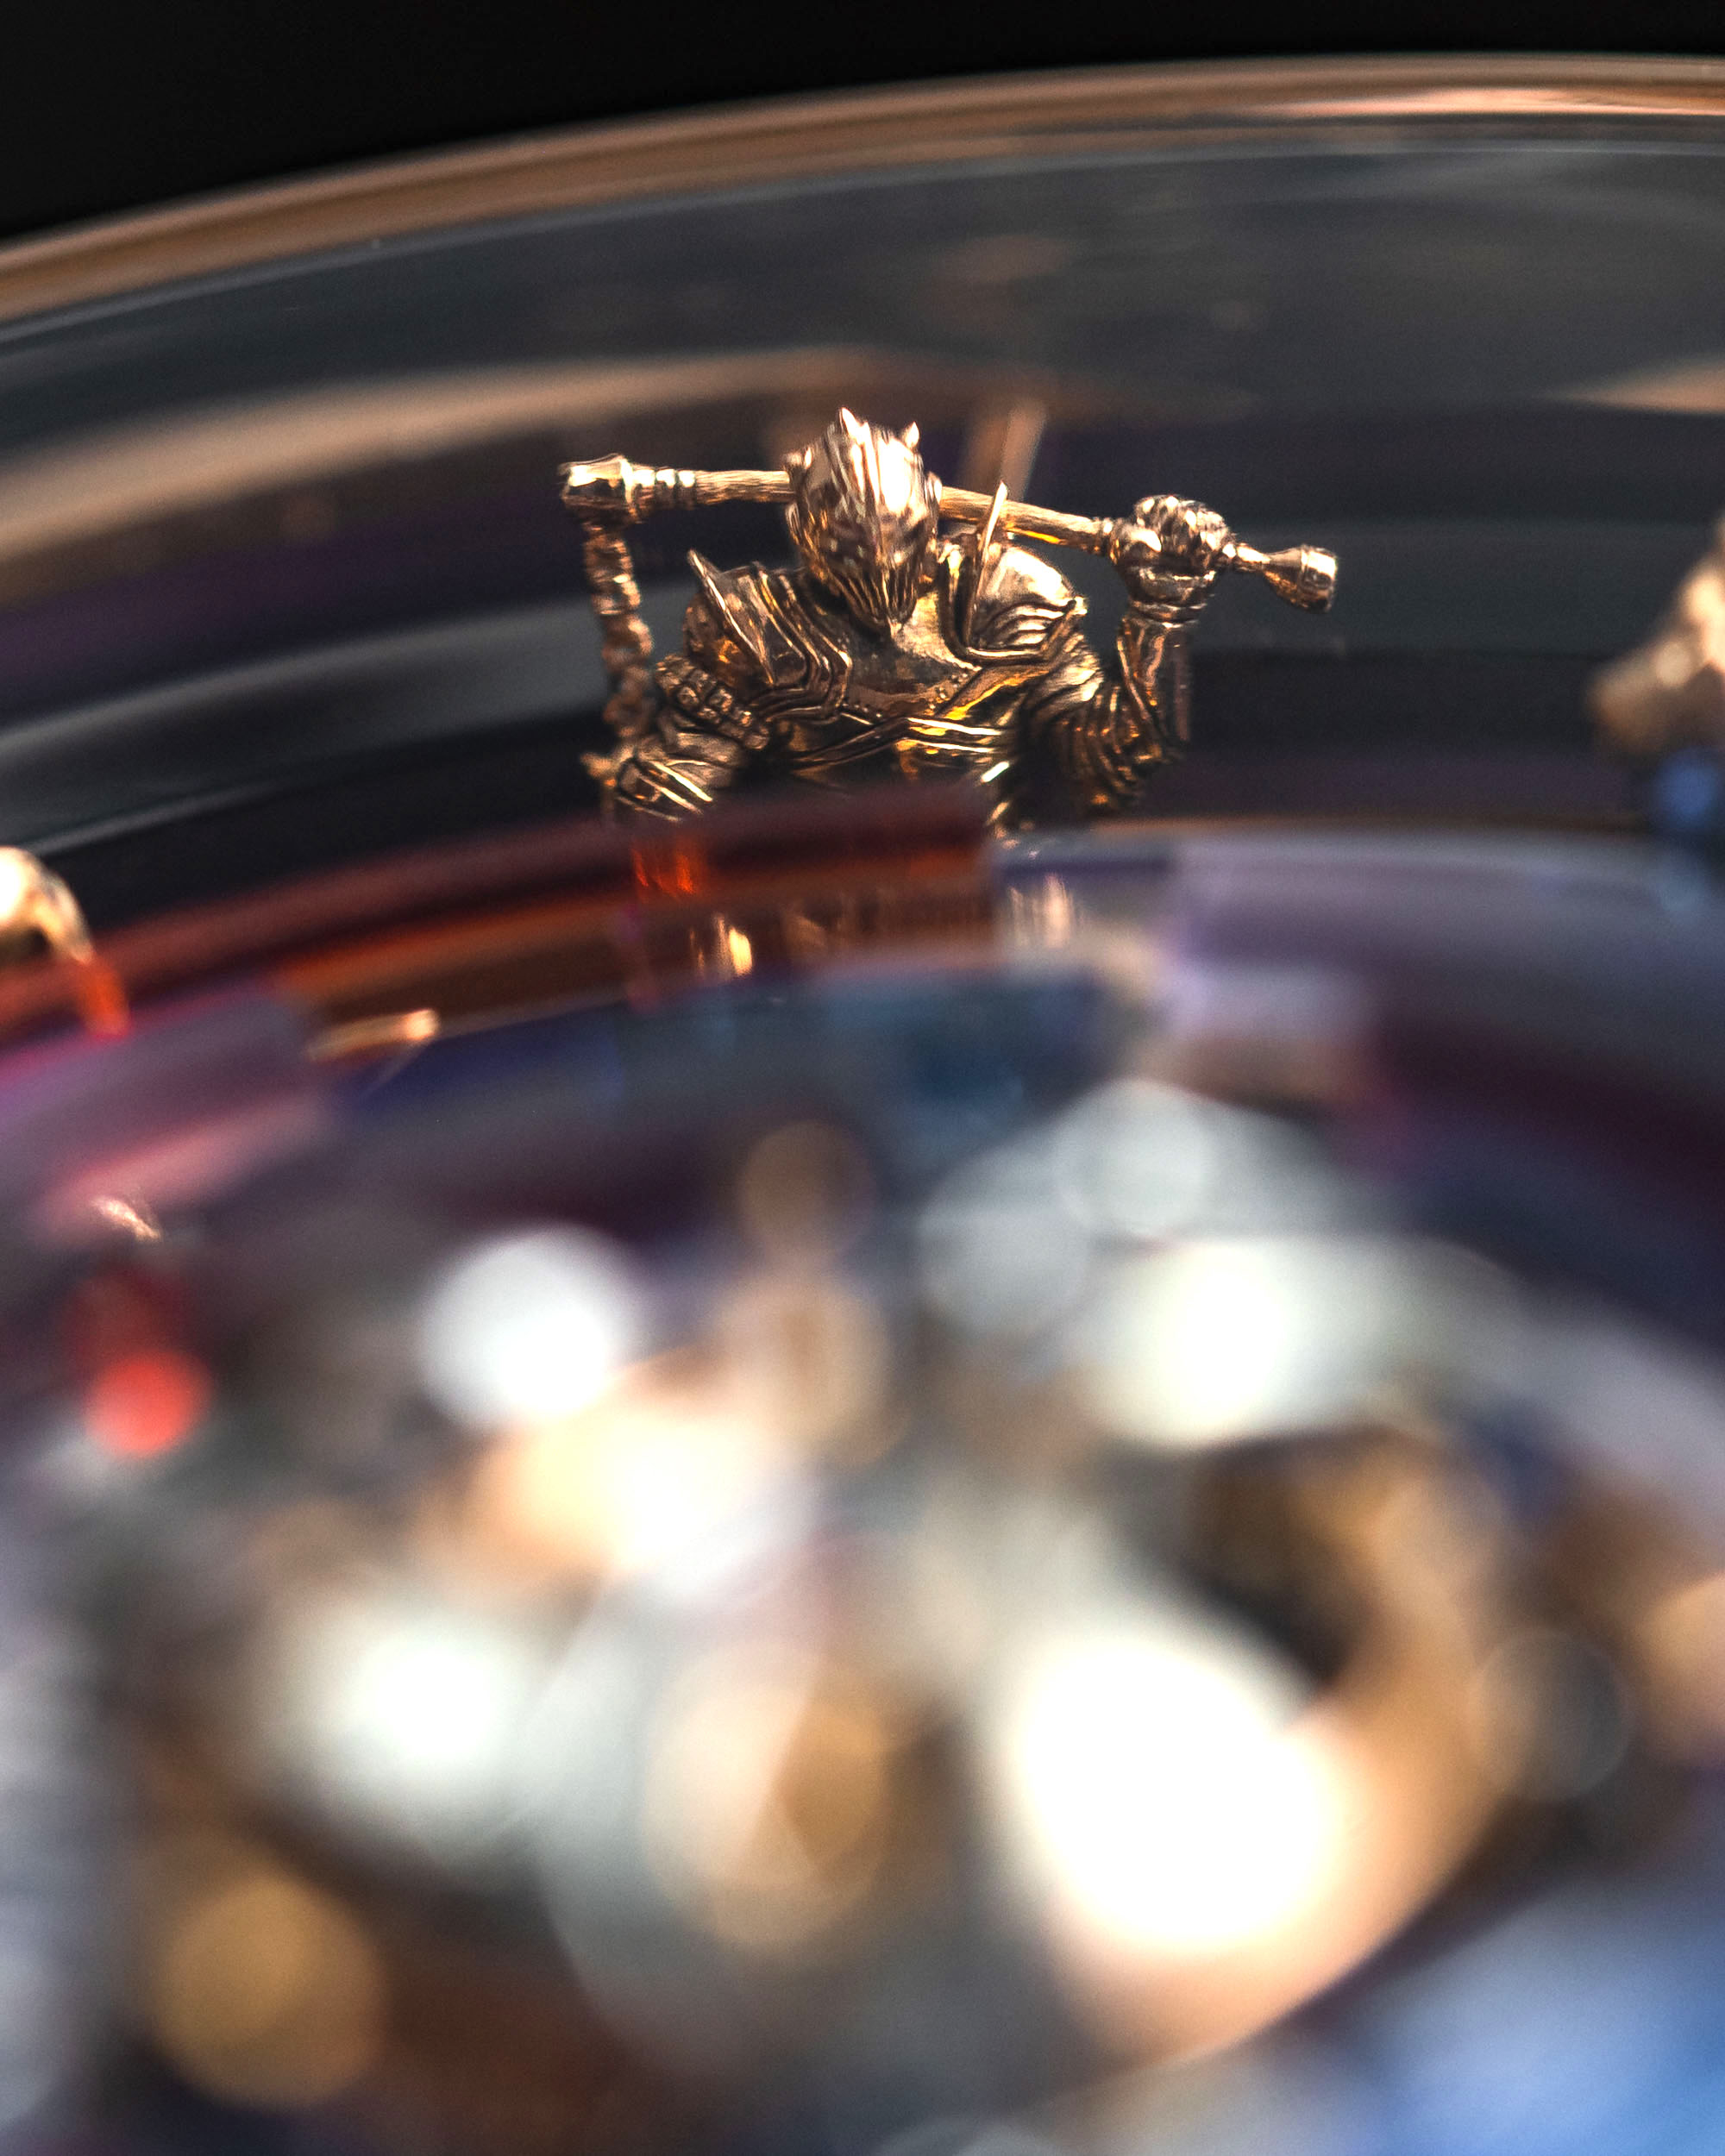 Обзор часов Roger Dubuis Knights Of The Round Table Monotourbillon из розового золота стоимостью $580 000